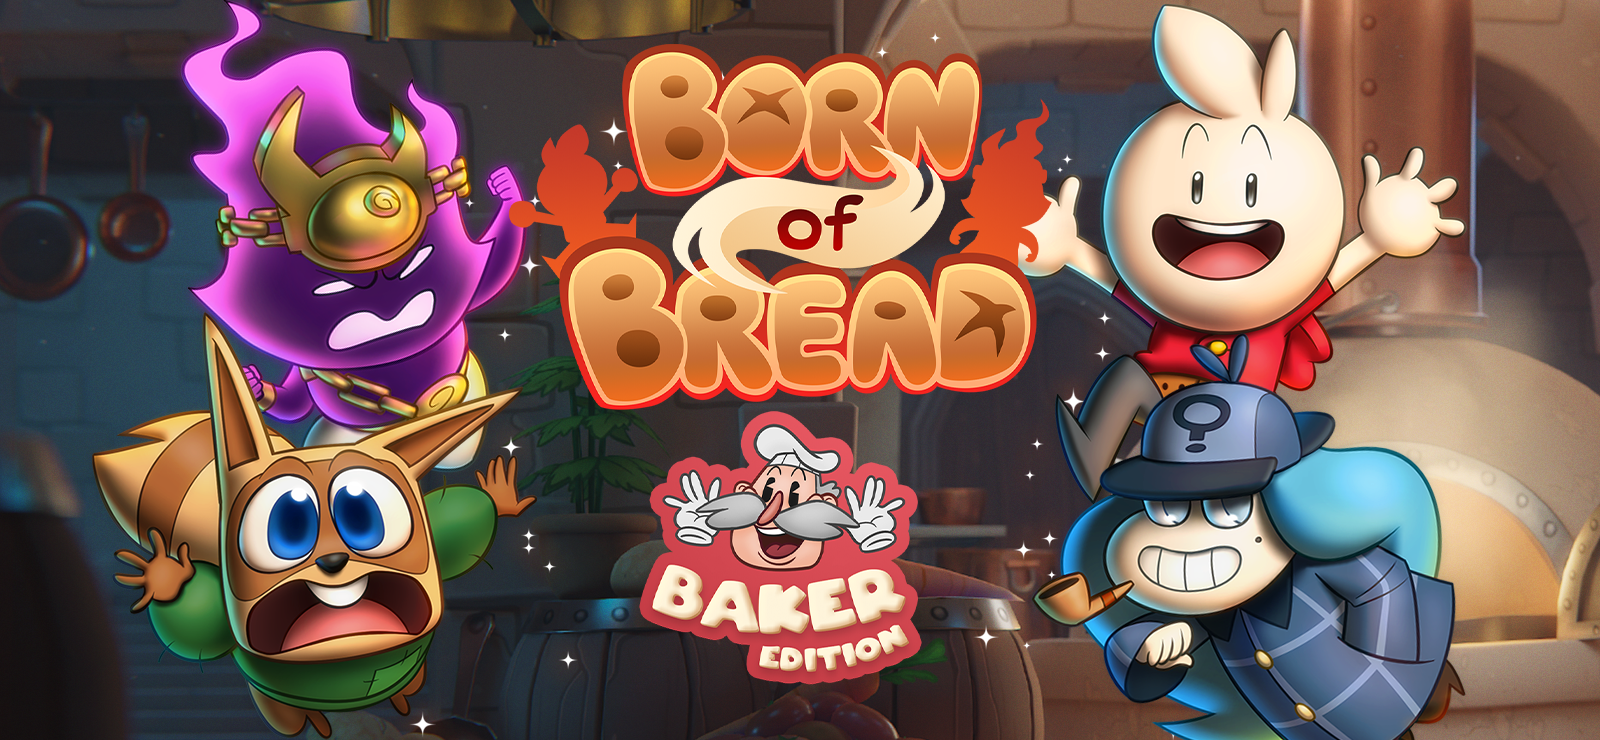 Born Of Bread - Baker Edition